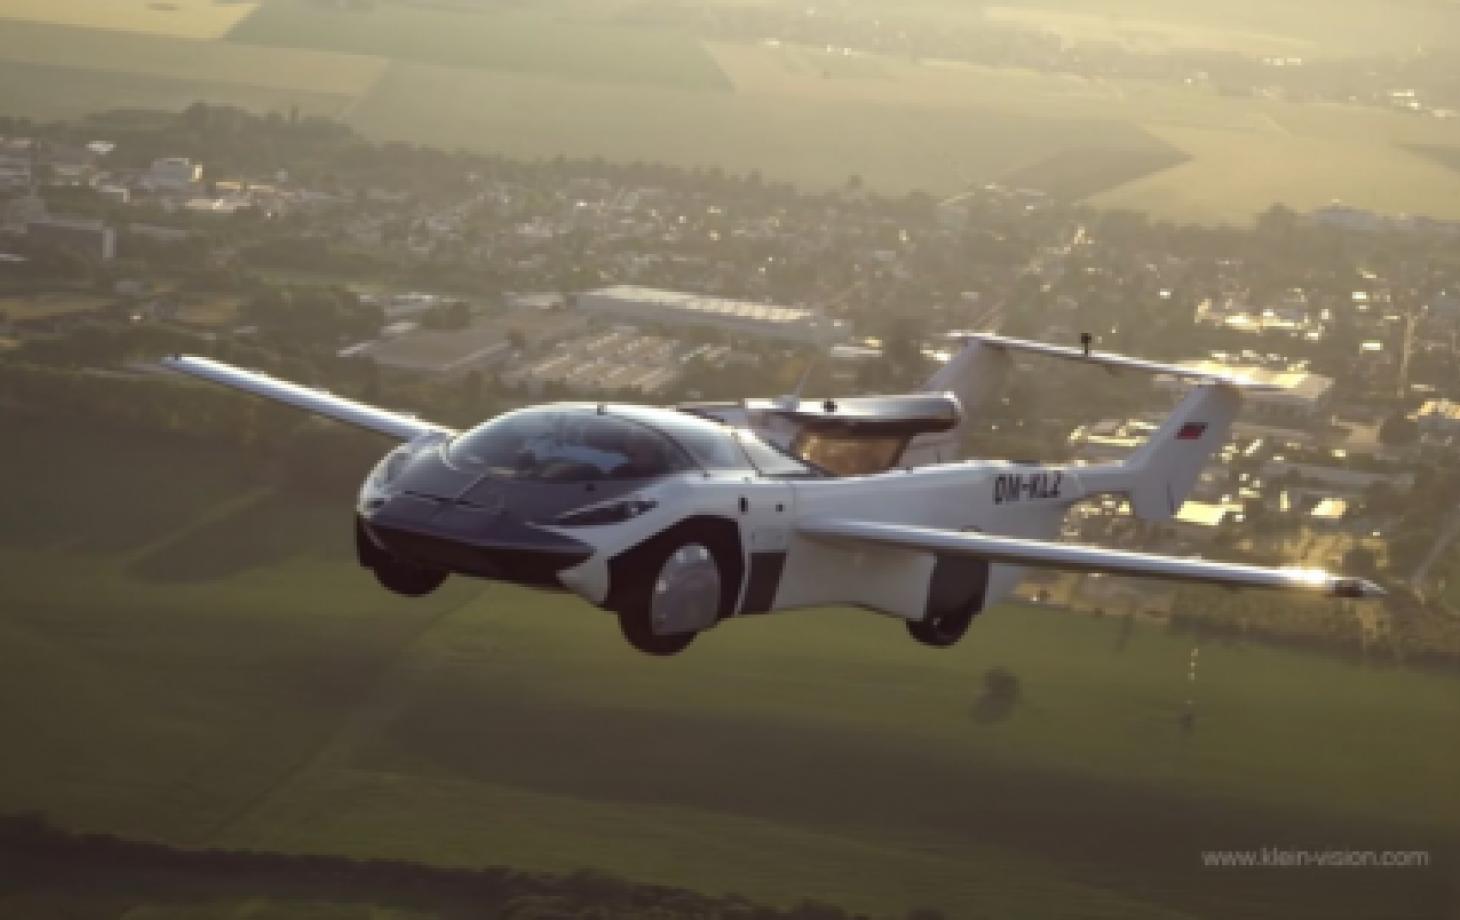 La voiture volante a déjà effectué son premier vol interurbain en Slovaquie